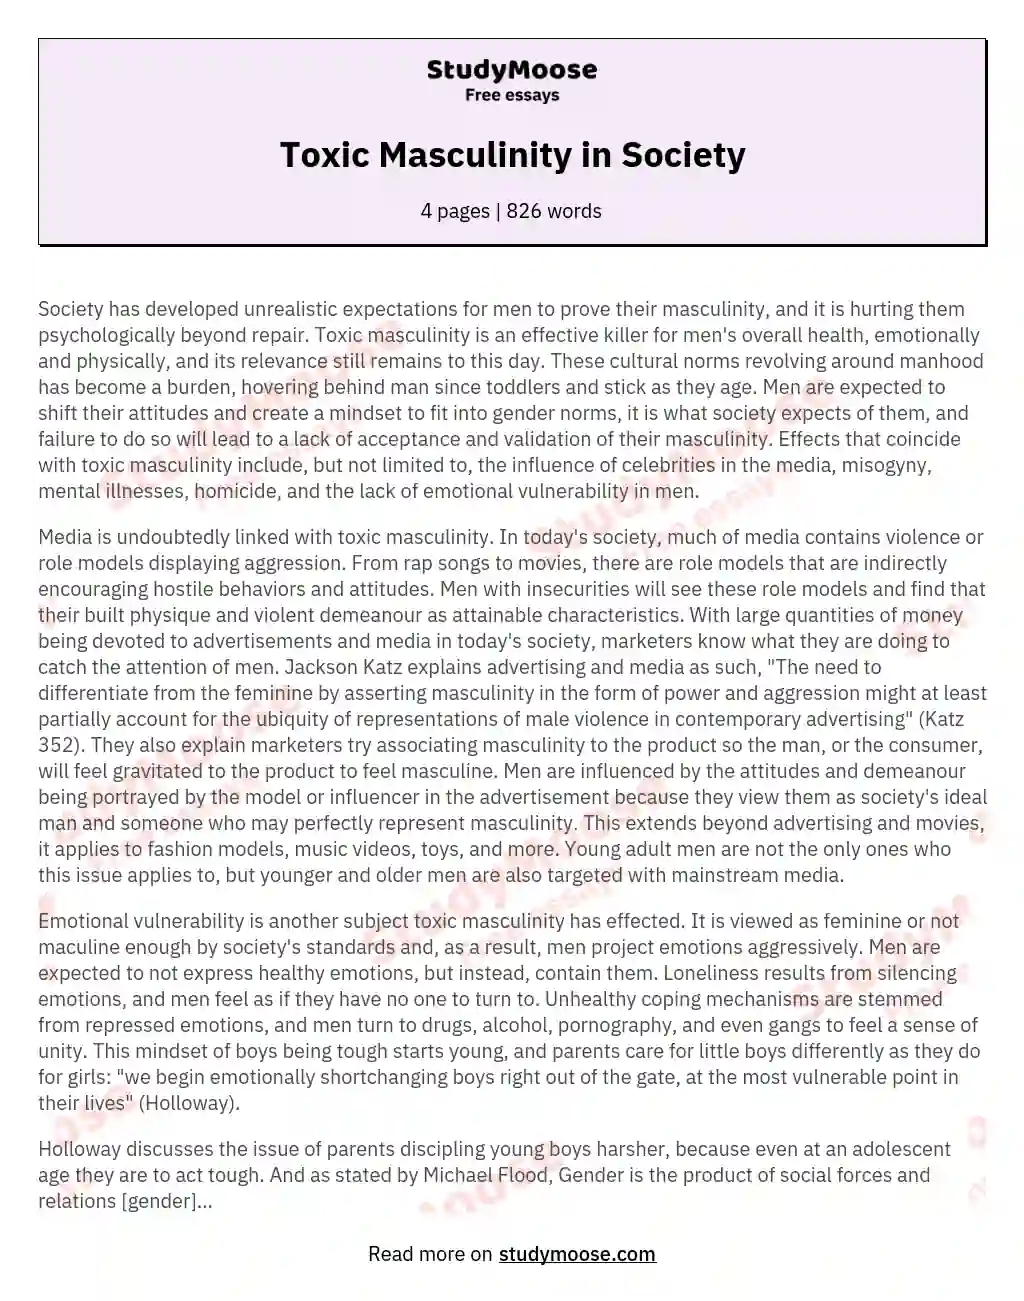 Toxic Masculinity in Society